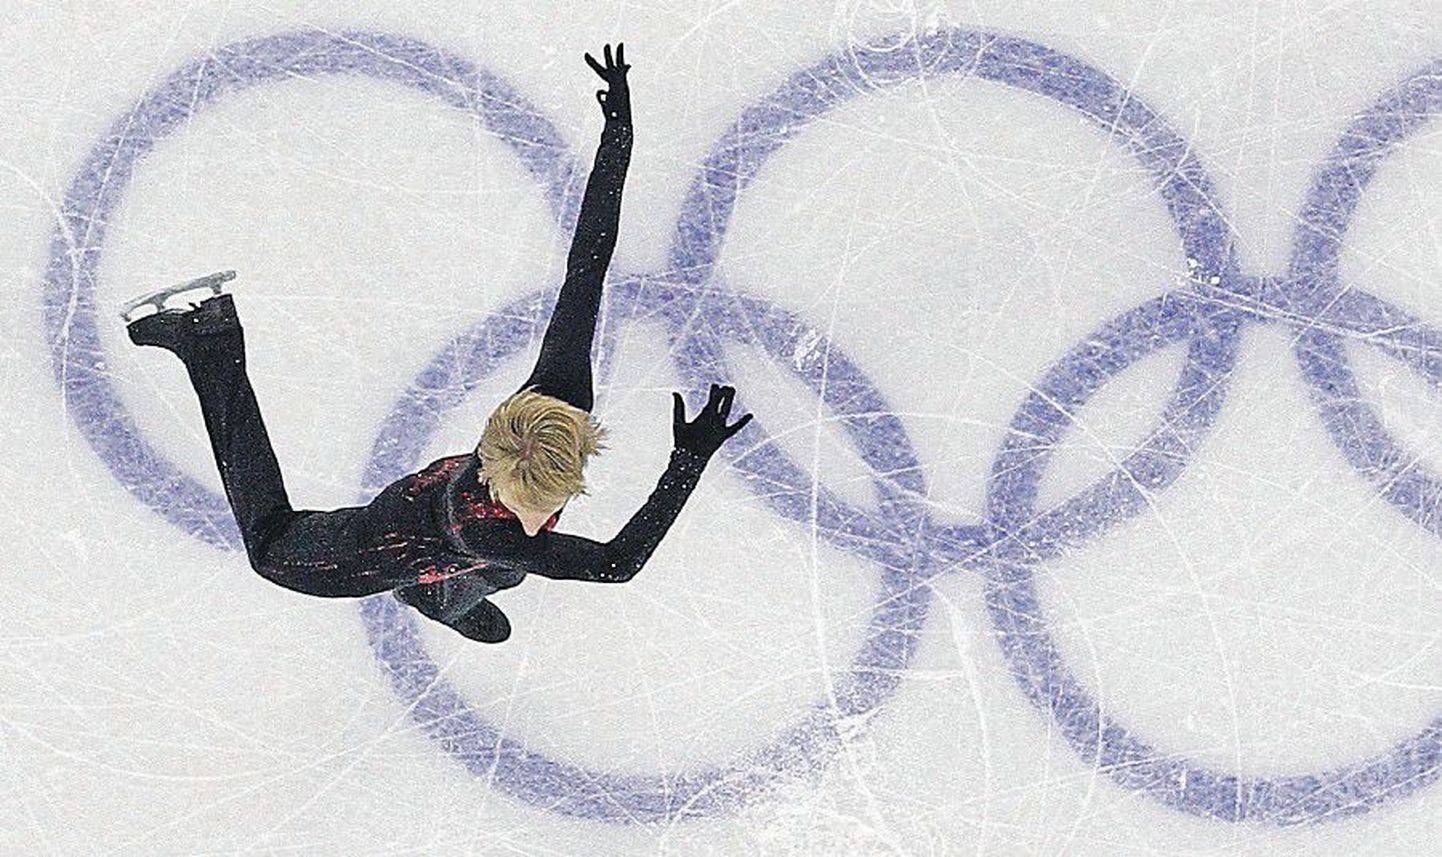 Евгений Плющенко, стремясь отстоять свой титул олимпийского чемпиона, сделал ставку на сложные прыжки и оказался вторым.